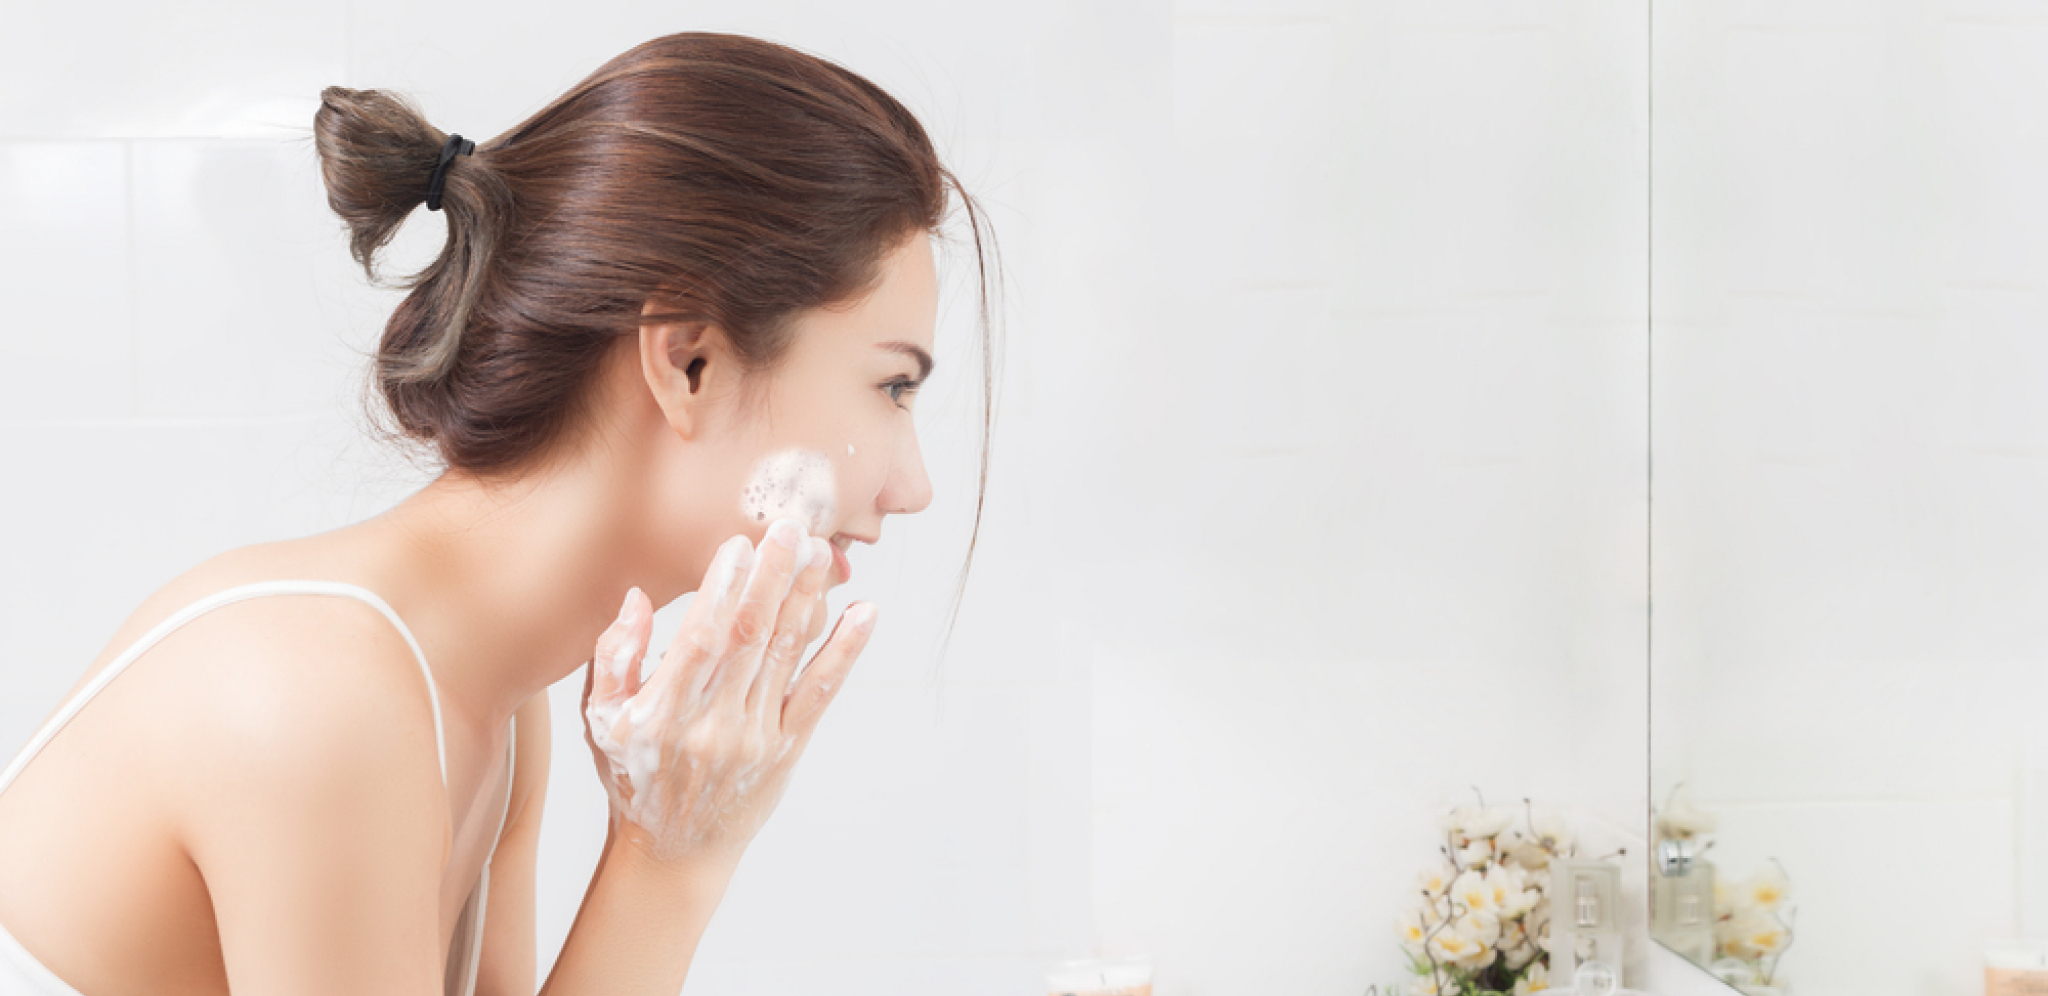 Više štete nego koristi: Evo zbog čega ne treba da čistite lice nakon buđenja